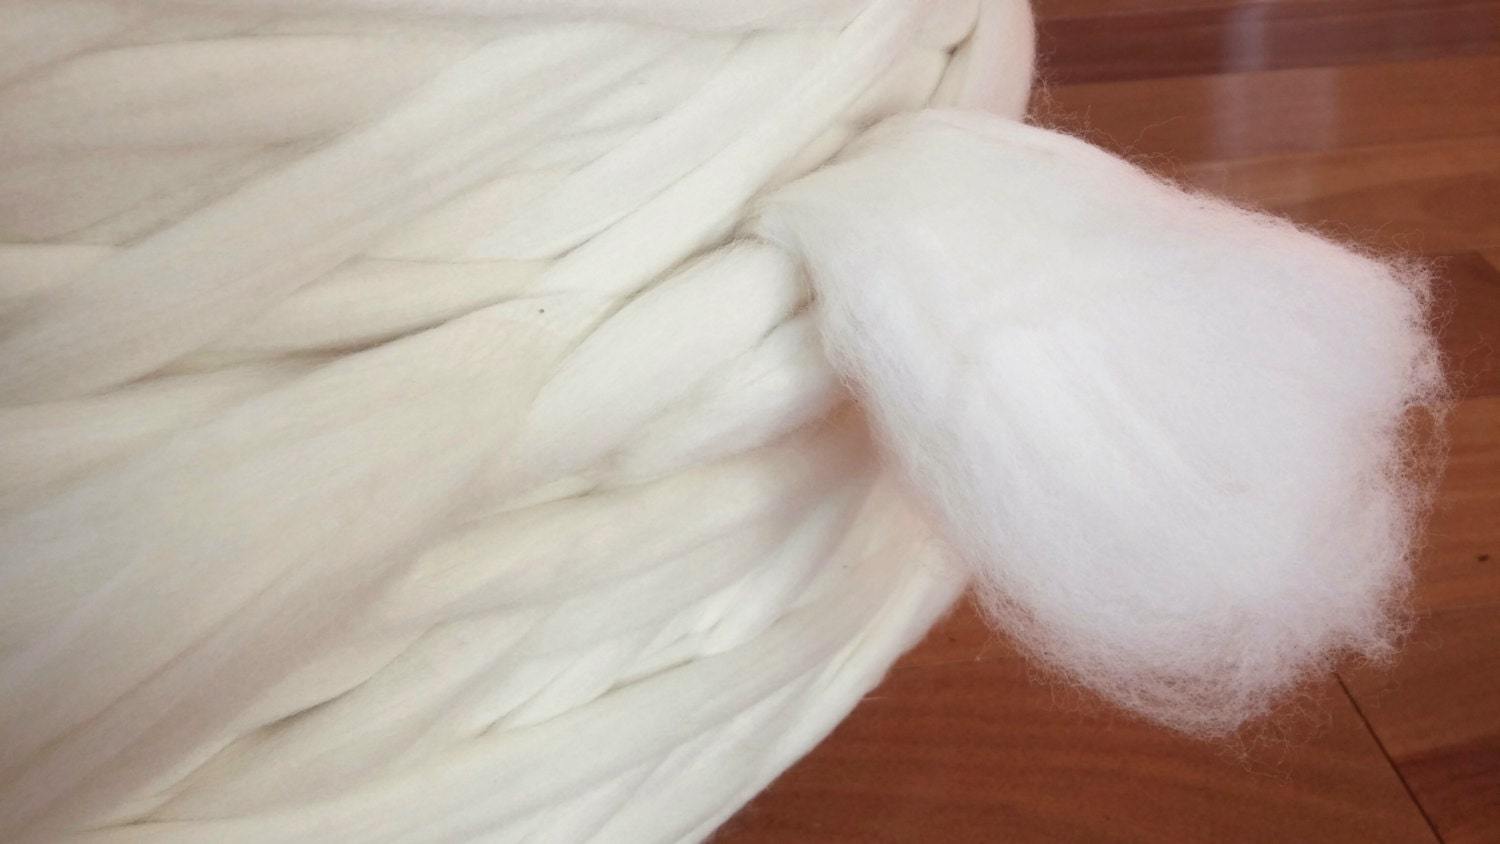 Wool Rove, Merino Wool Yarn, Merino Roving, Wool Fiber, White Wool Top –  Shep's Wool